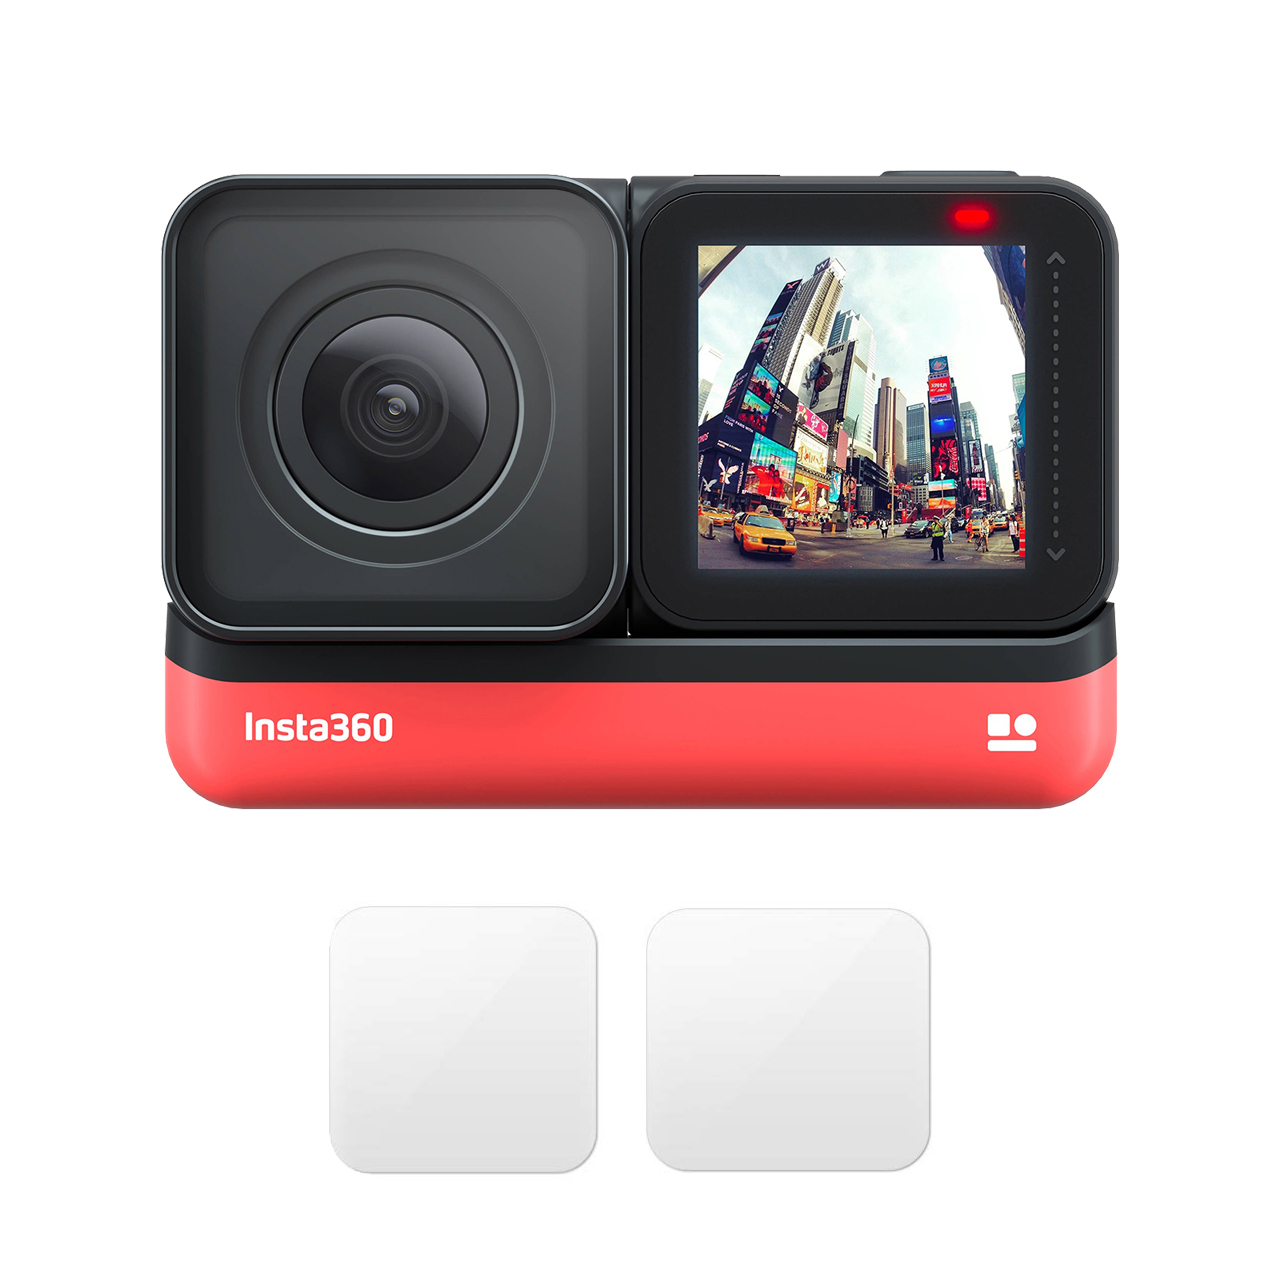 دوربین فیلم برداری ورزشی اینستا 360 مدل ONE R Twin Edition به همراه محافظ لنز